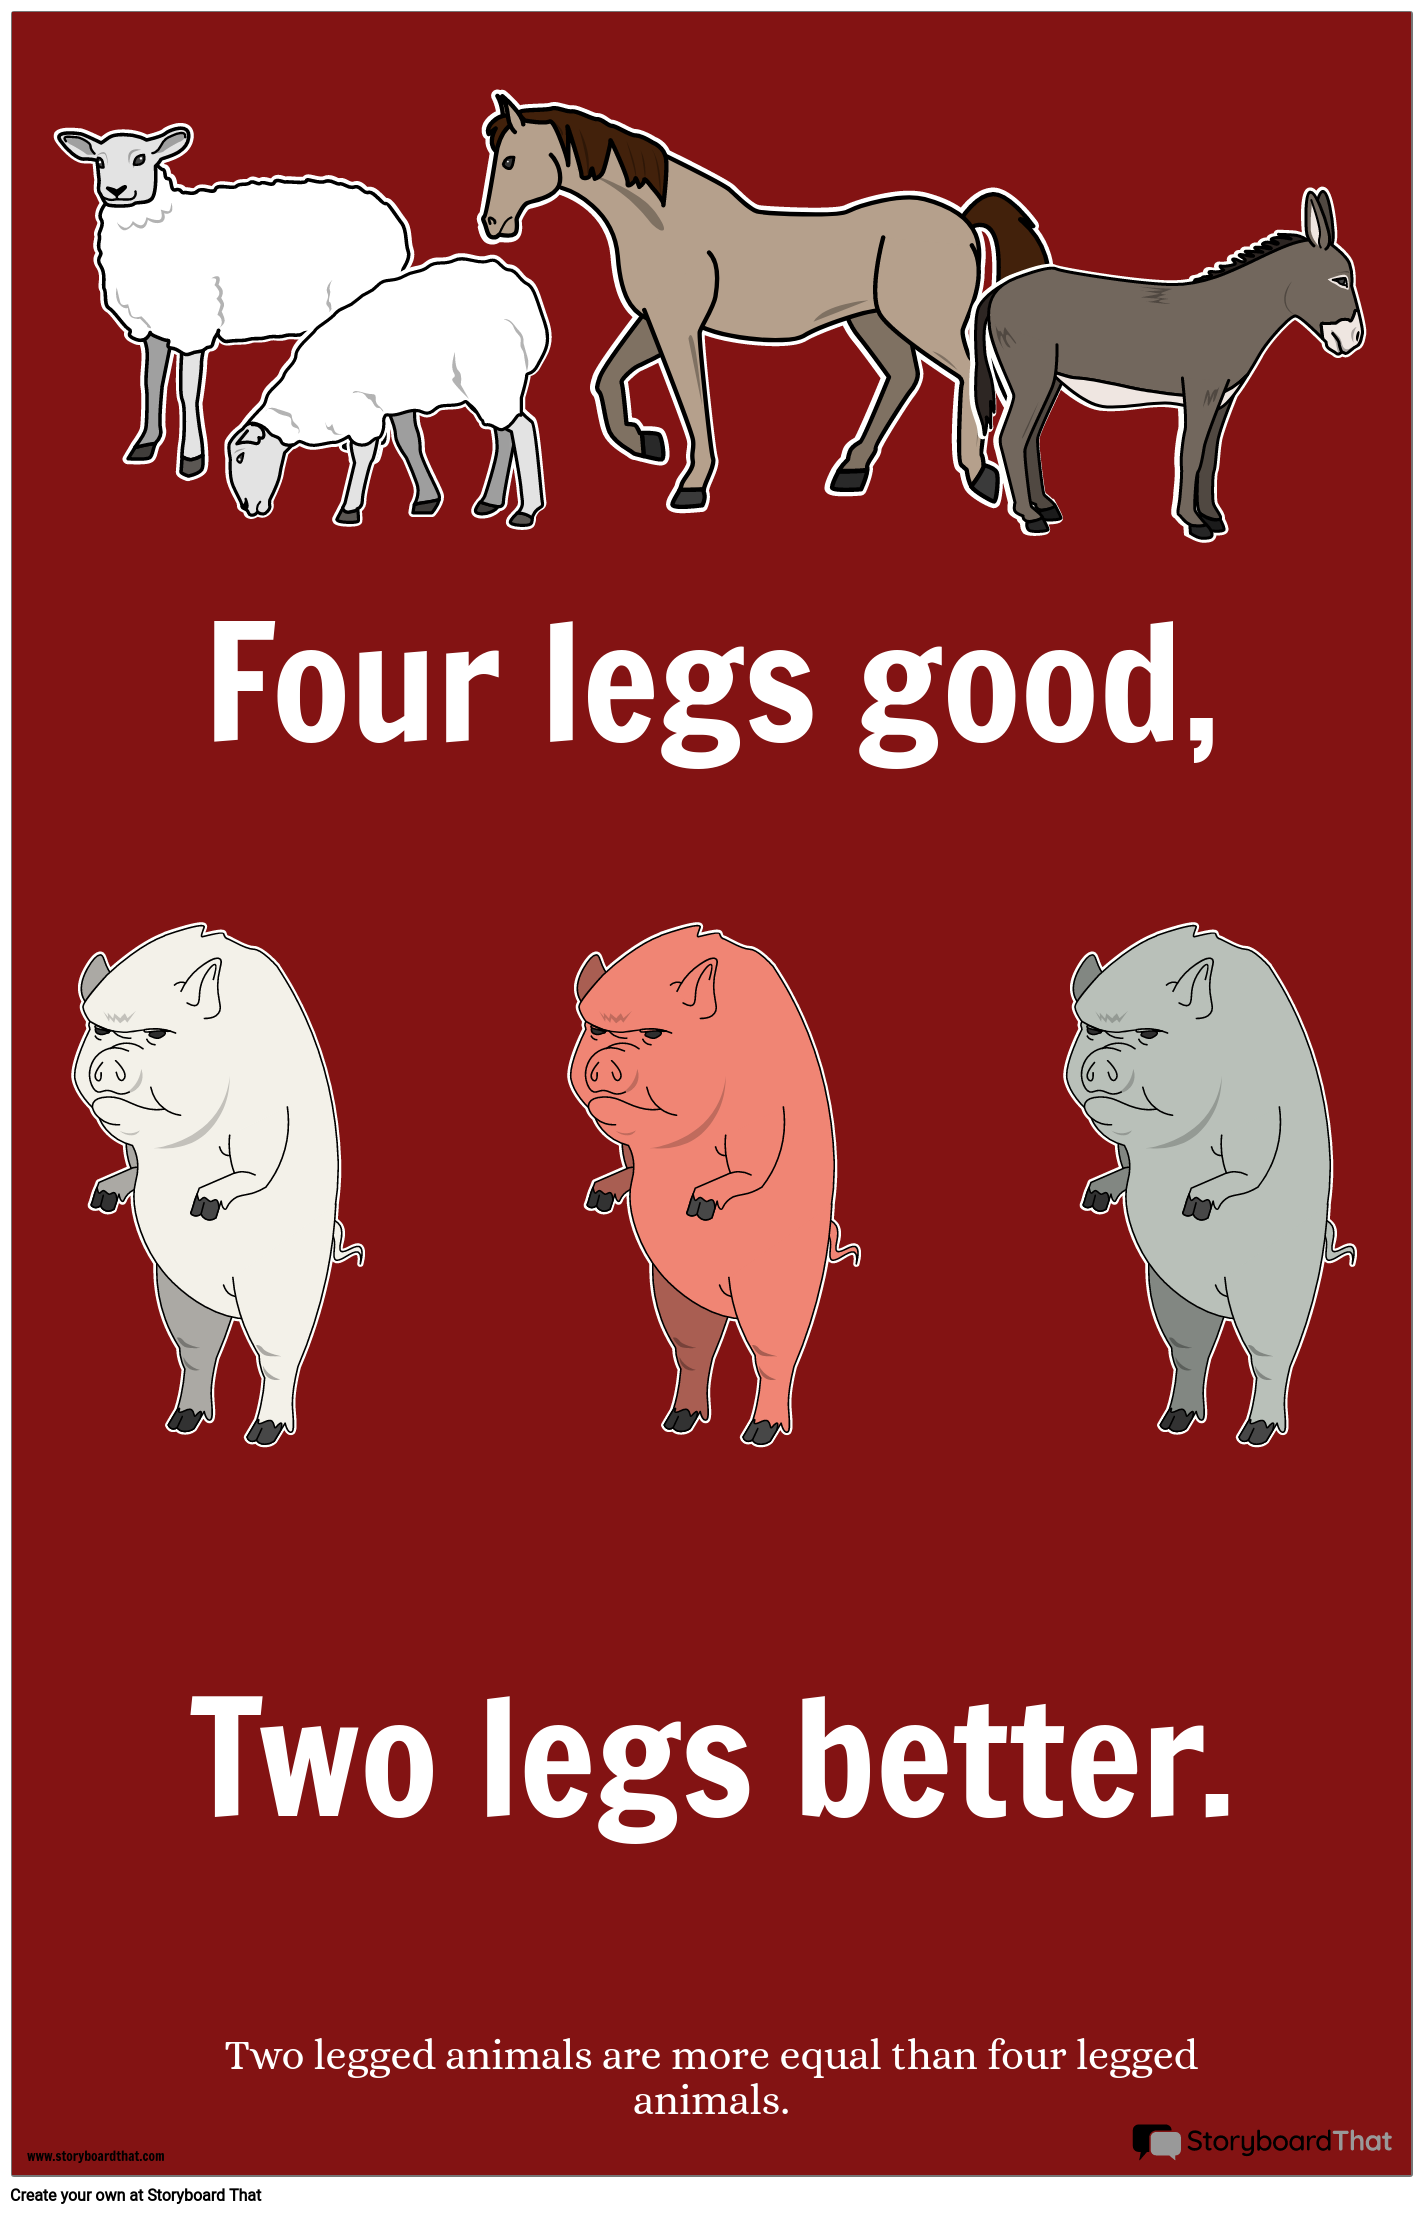 Animal Farm Propaganda Poster Example